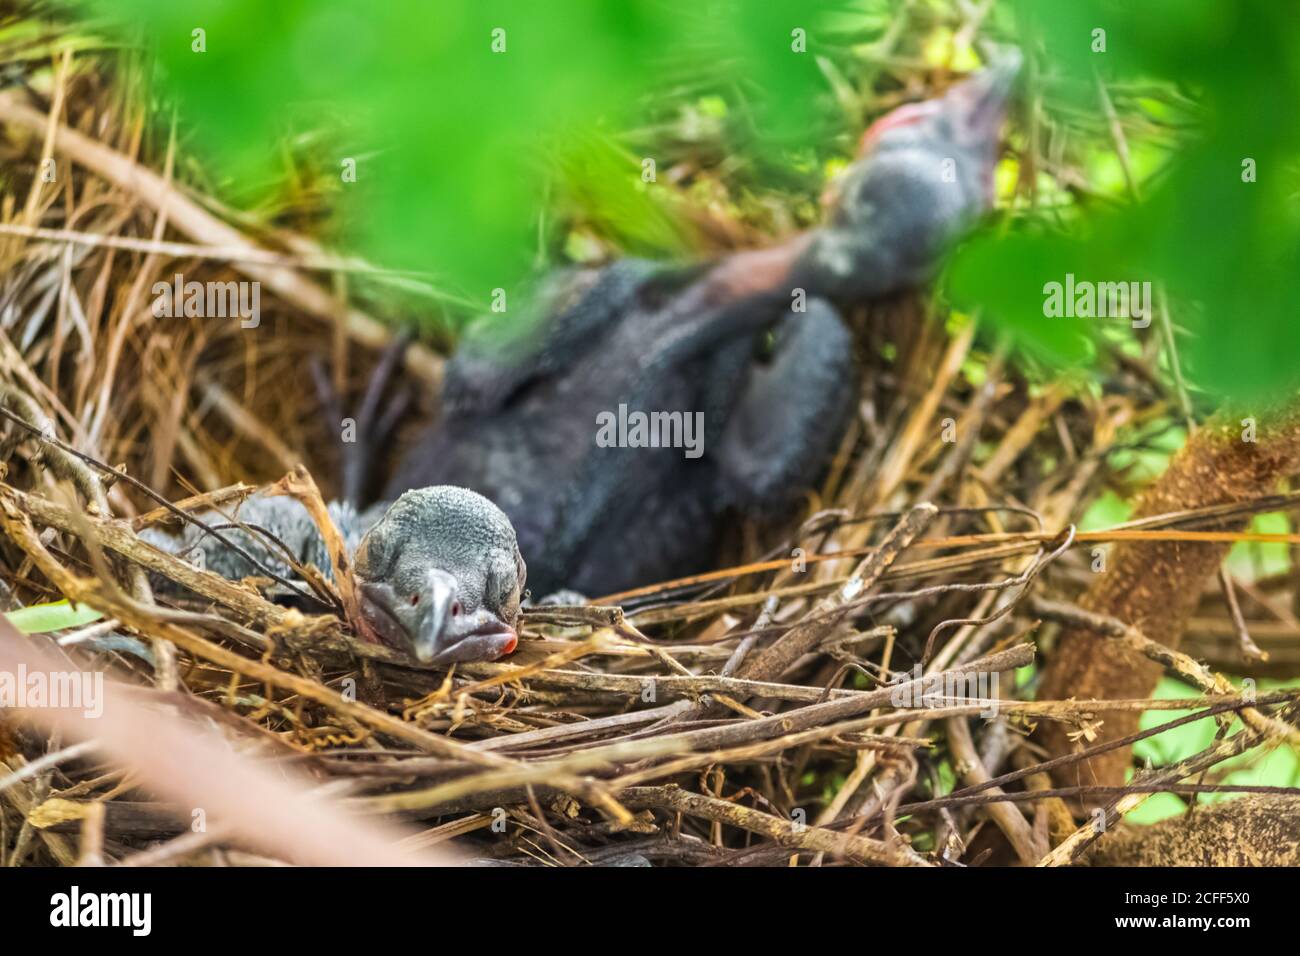 Babykrähe liegt im Nest und schlüpft auf ihre Mutter für Nahrung. Neugeborene Krähe / corvus auf Krähe Nest oben auf dem Baum. Vögel brüten bei Stockfoto